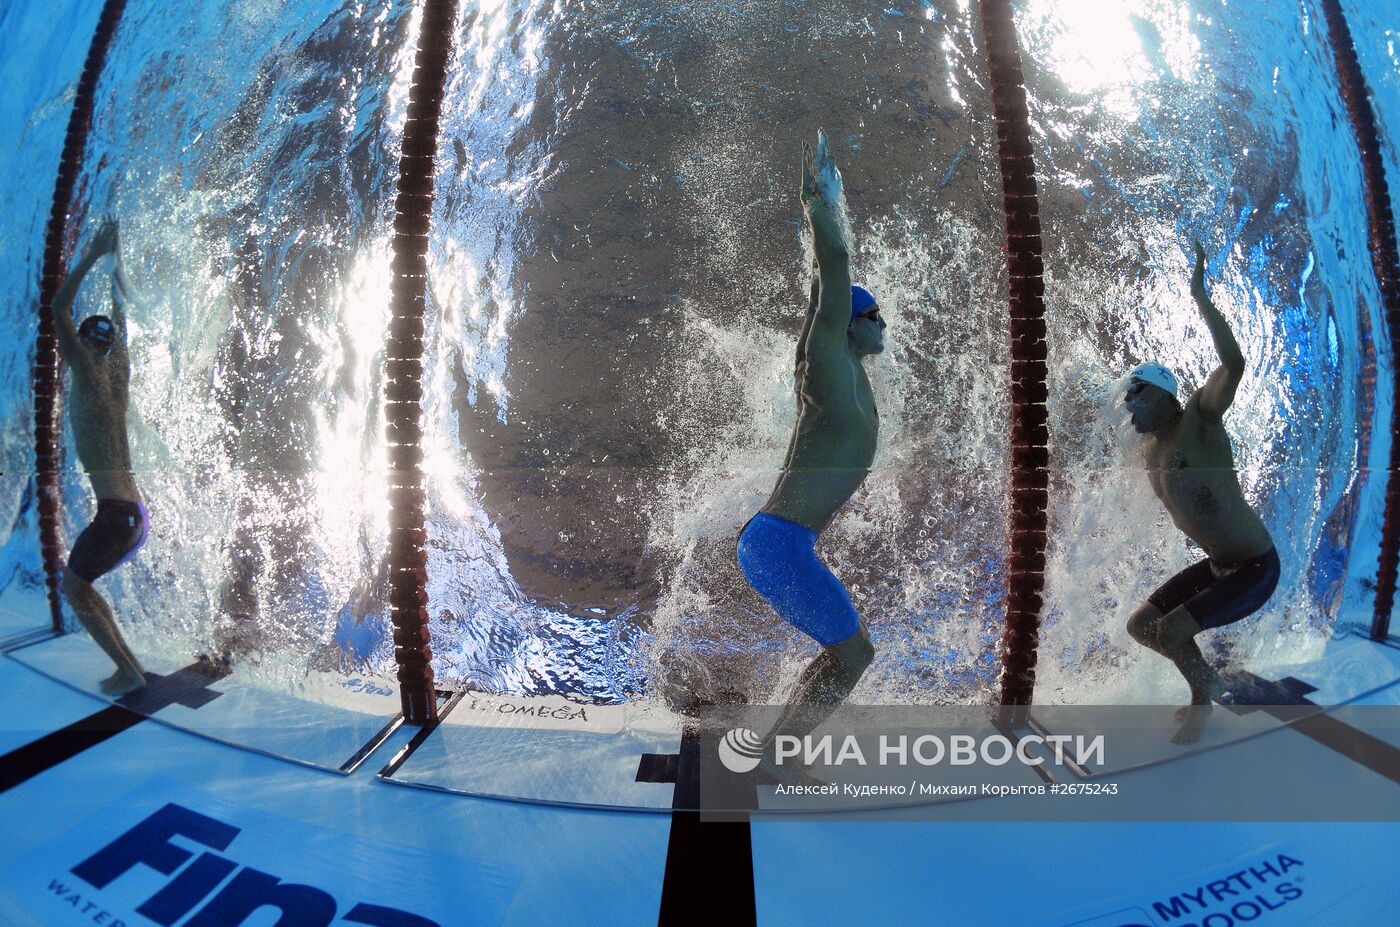 Чемпионат мира FINA 2015. Плавание. Пятый день. Вечерняя сессия